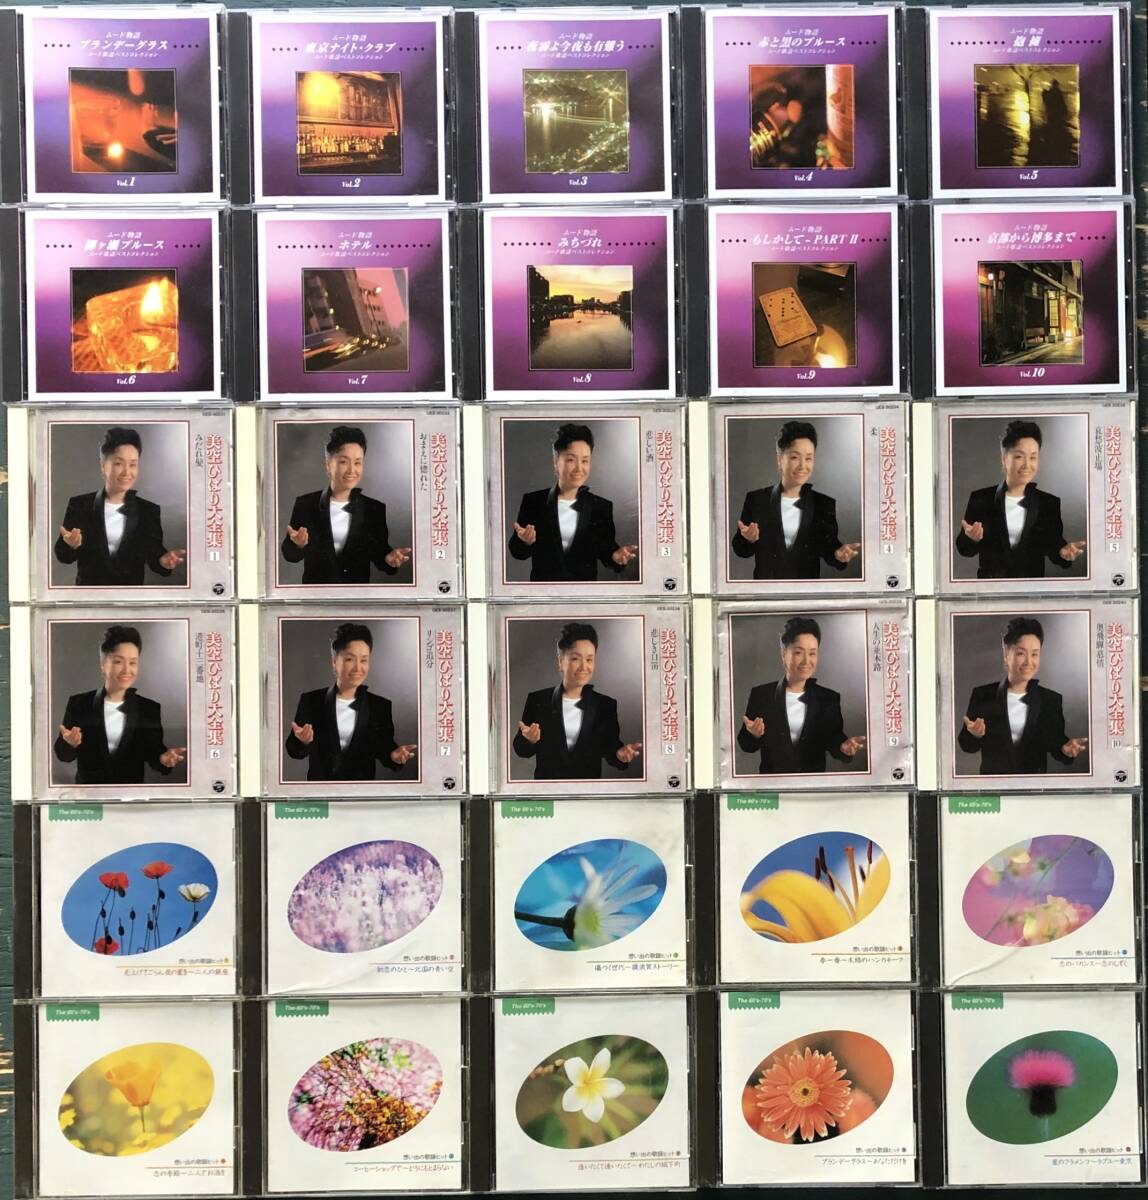 演歌、歌謡曲など,いろいろまとめてCD60枚セット 美空ひばり、北島三郎、木村好夫 ほか の画像3